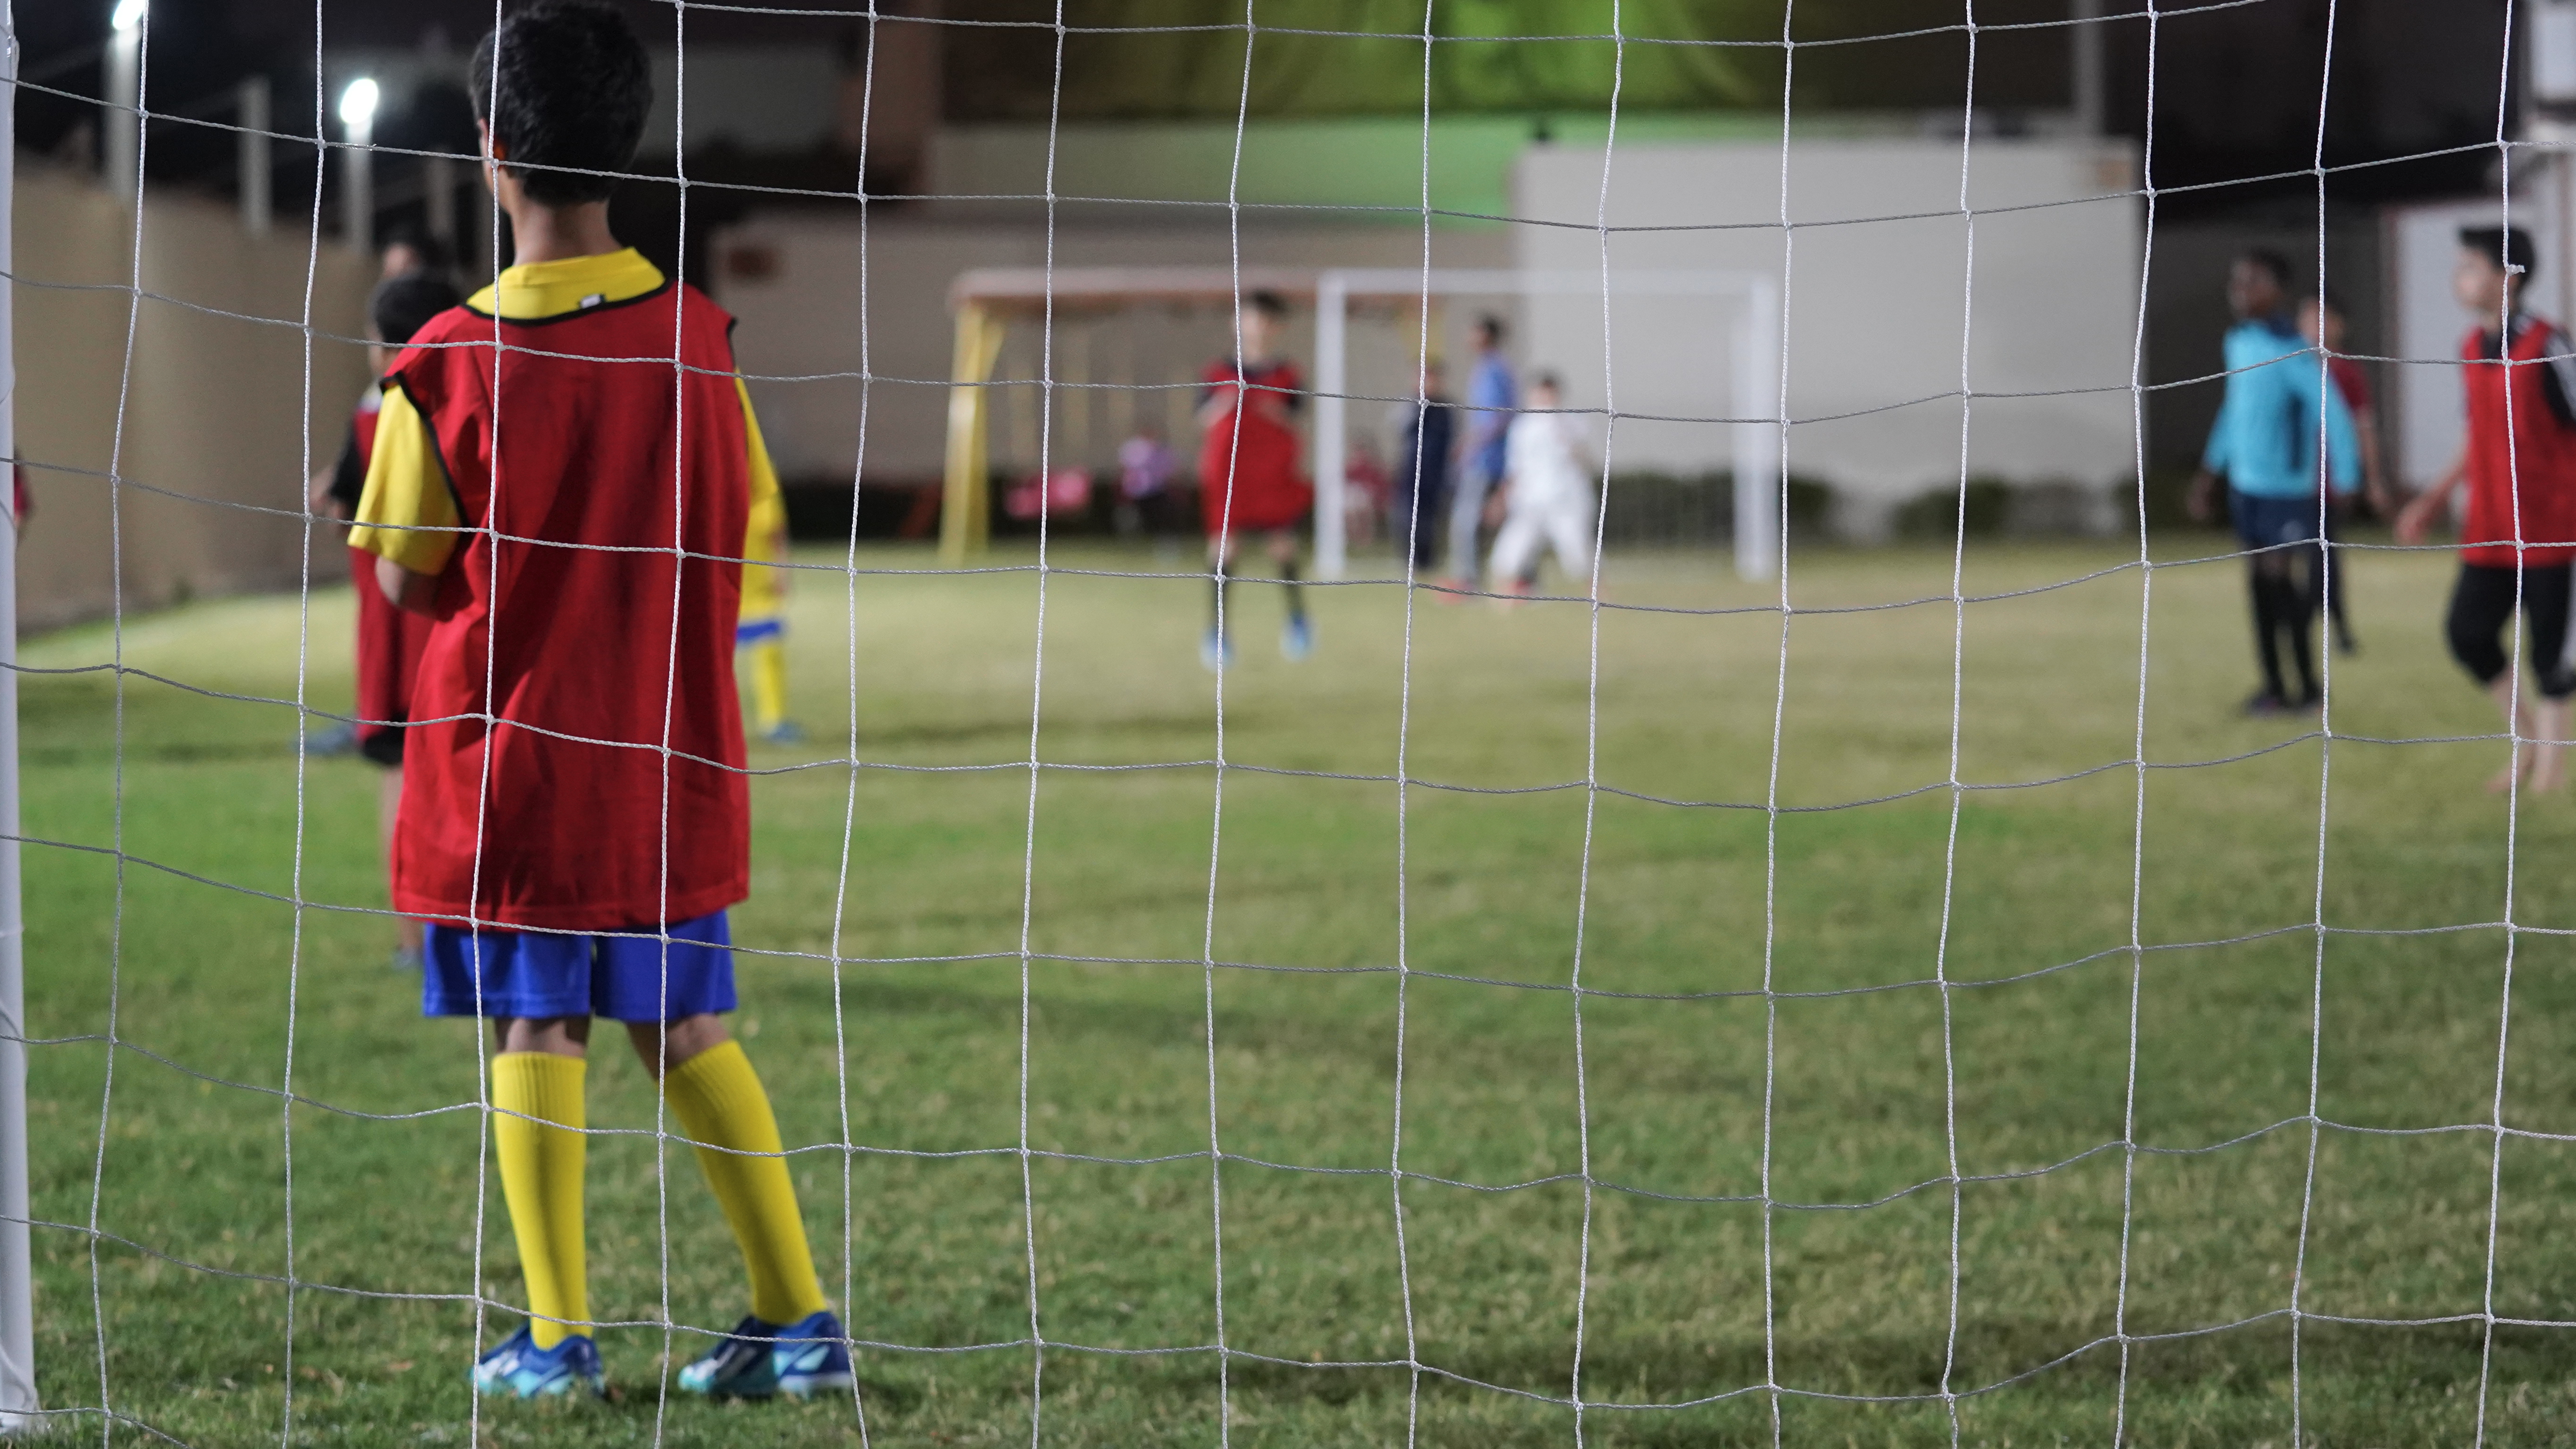 مركز رعاية الأيتام دريمة تستضيف البطولة الرمضانية الاولى لكرة القدم  لتعزيز المنافسة الودية بين ابناء دريمة  والموظفين